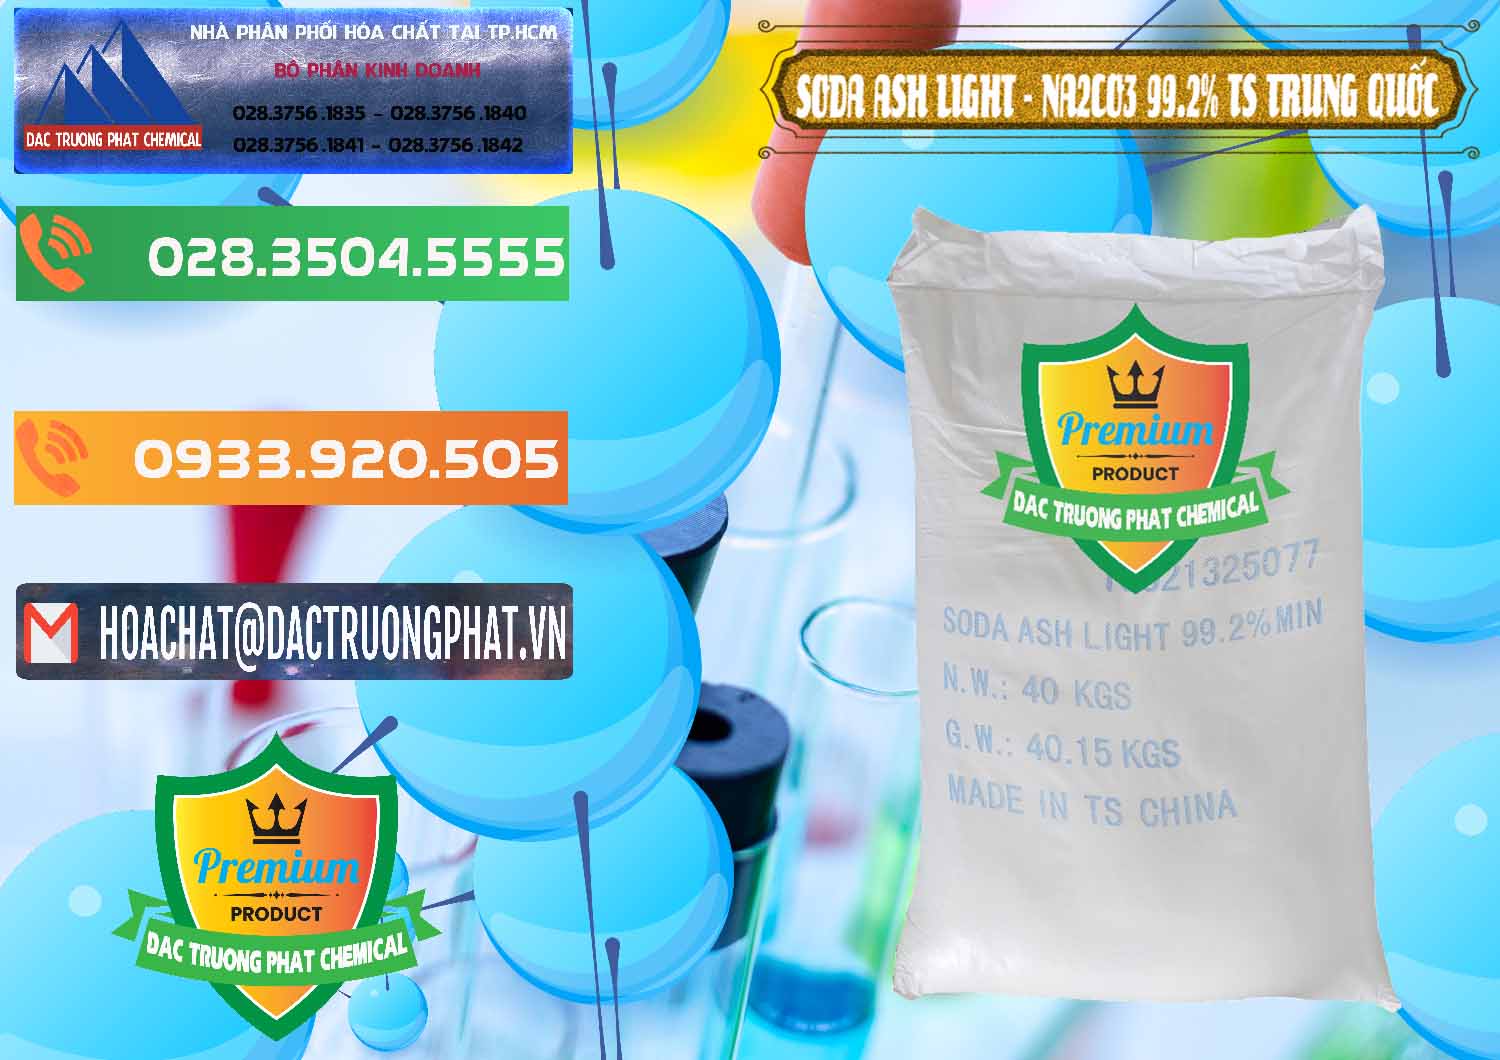 Nơi bán _ cung cấp Soda Ash Light - NA2CO3 TS Trung Quốc China - 0221 - Nơi phân phối và cung ứng hóa chất tại TP.HCM - hoachatxulynuoc.com.vn